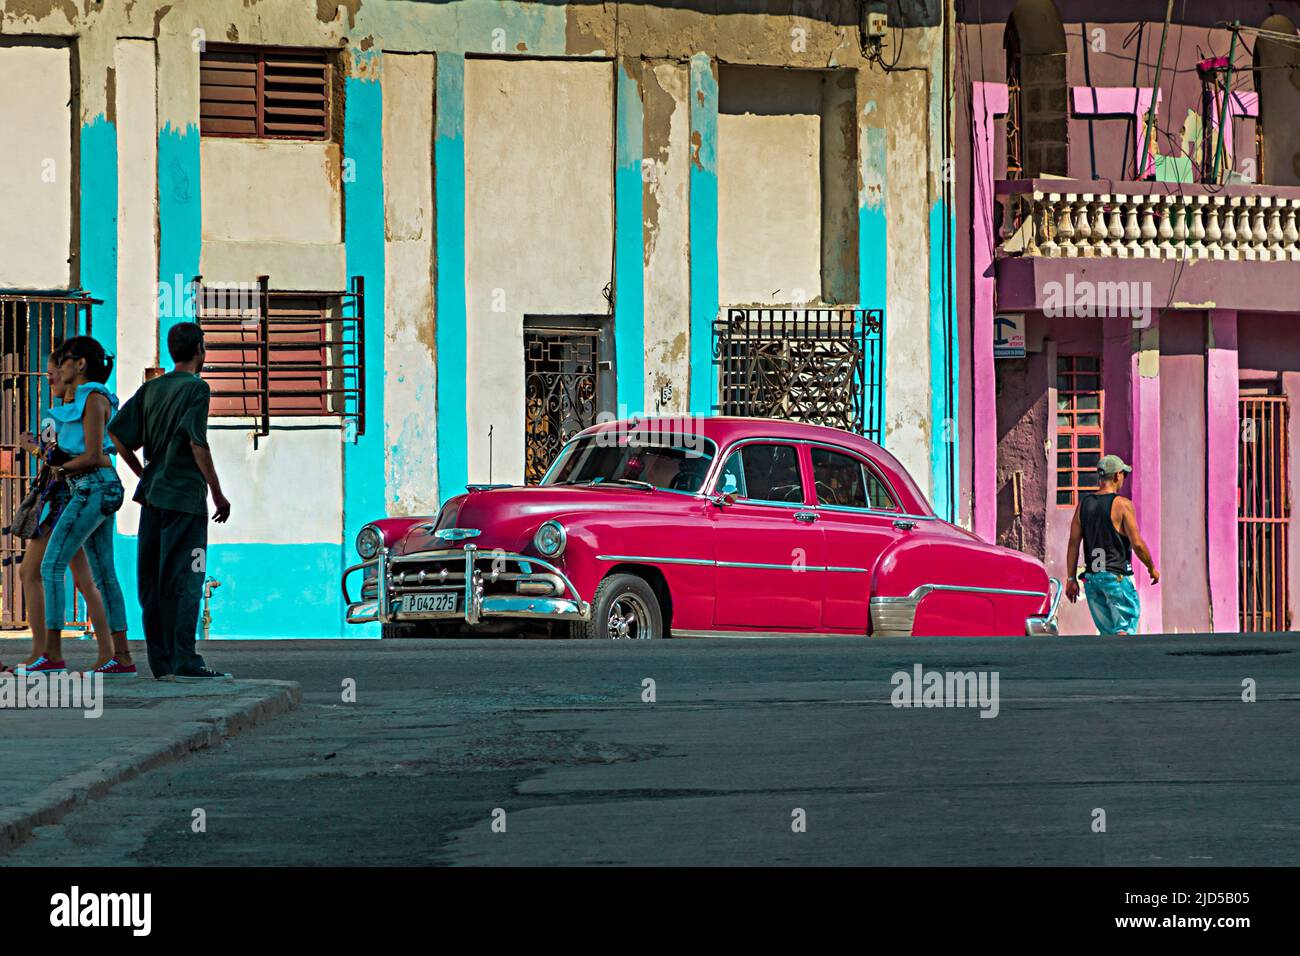 Une voiture rouge vintage dans une rue de la vieille Havane, Cuba Banque D'Images